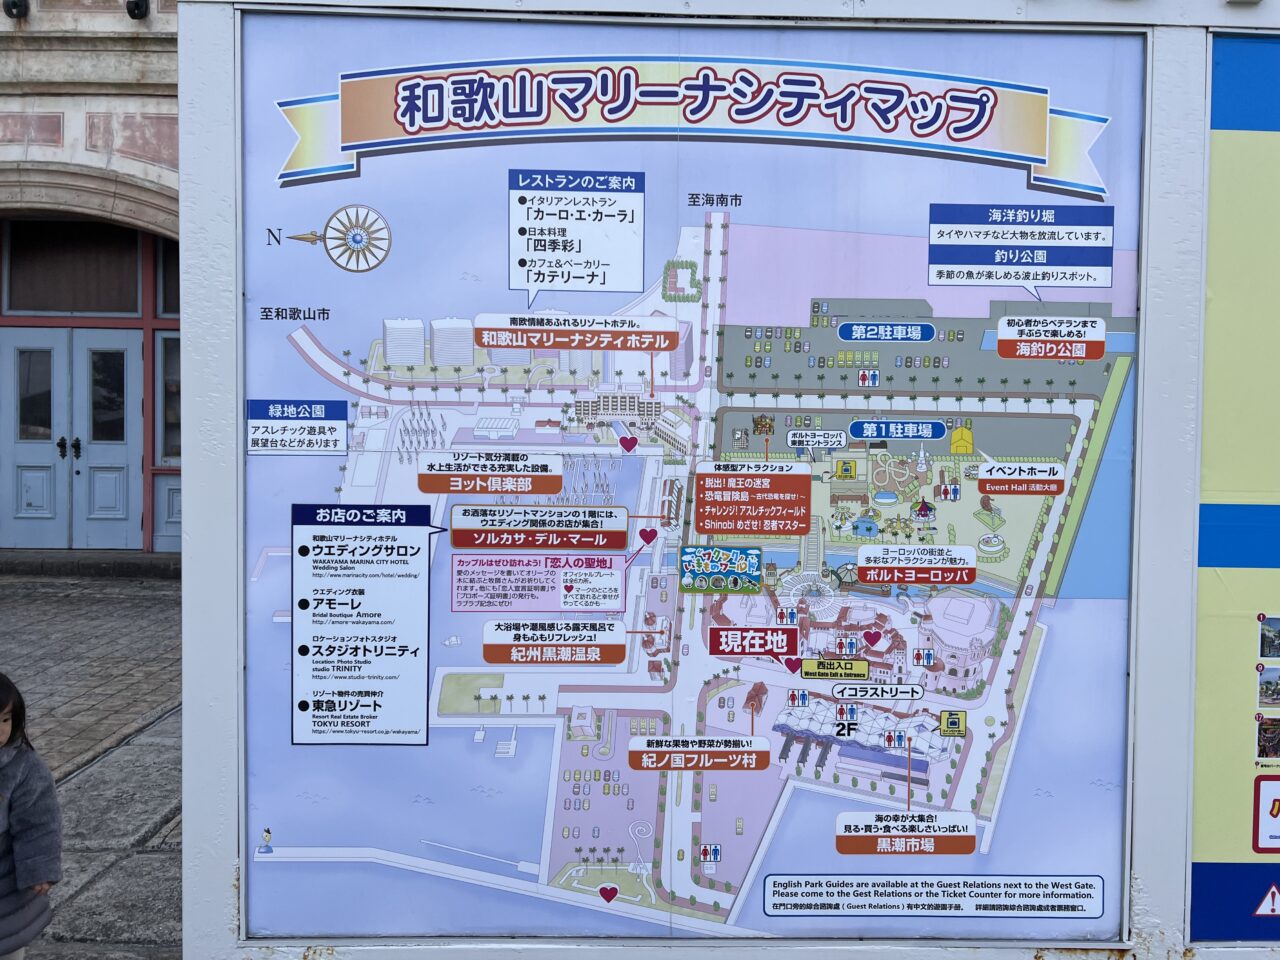 和歌山マリーナシティの全体マップです。